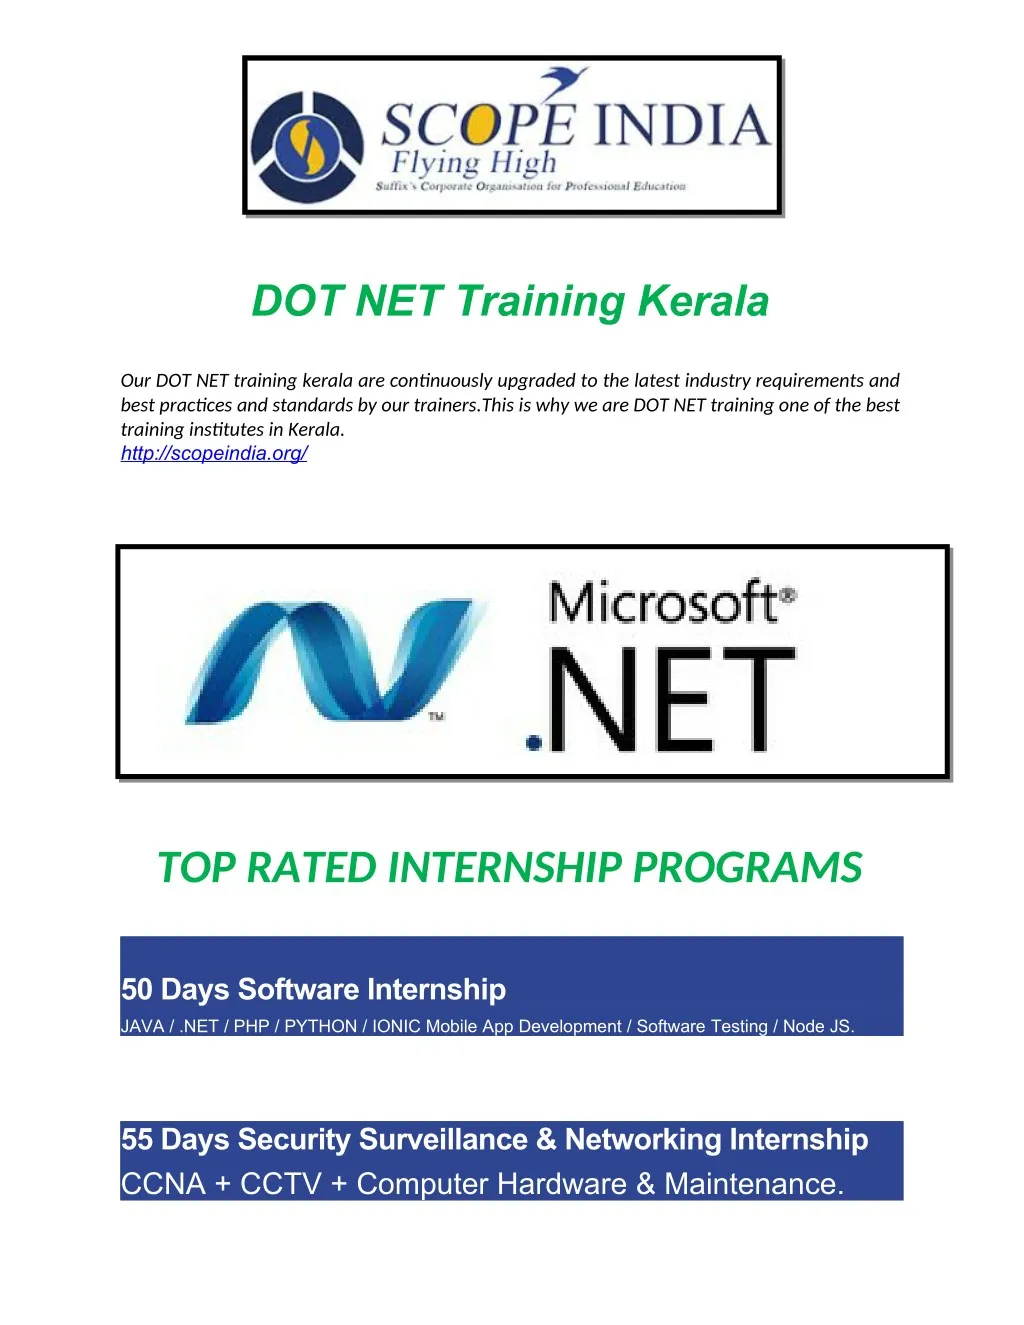 dot net training kerala